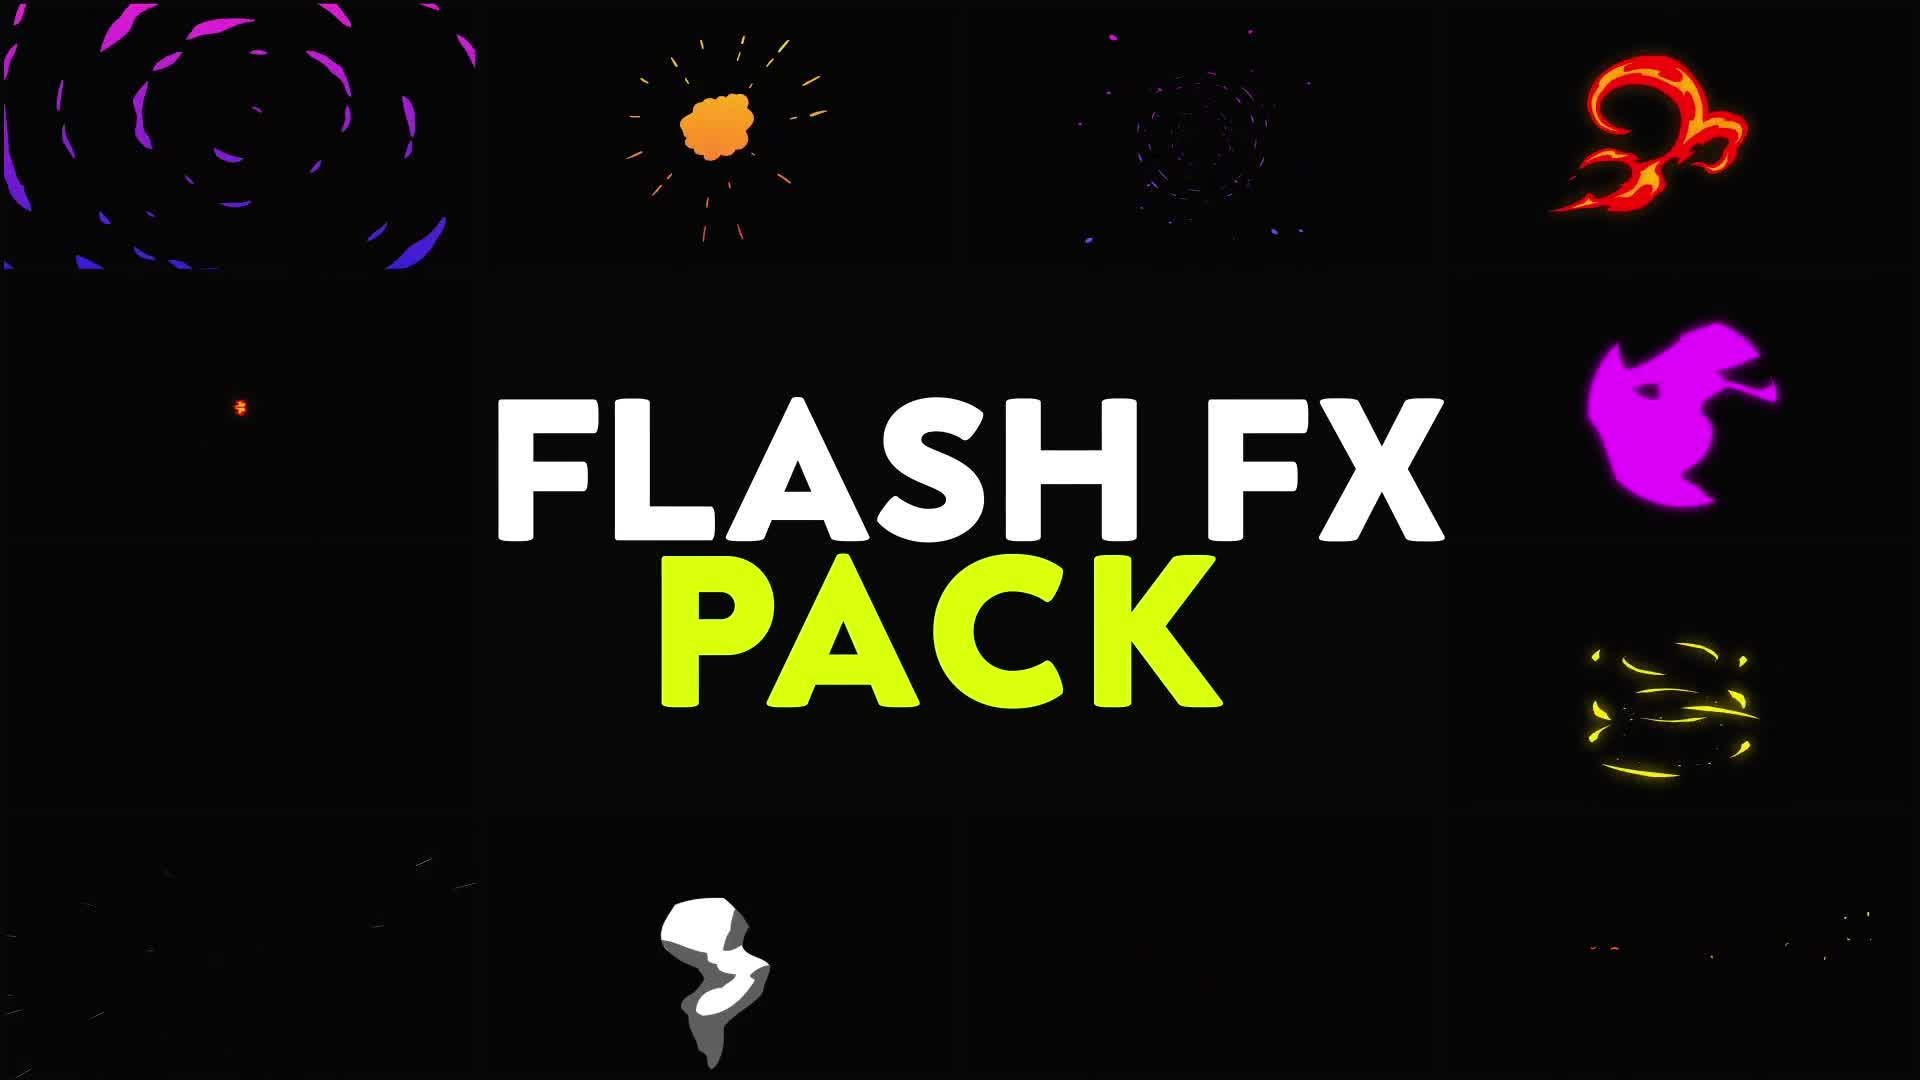 Flash FX Pack | Premiere Pro MOGRT Videohive 31542506 Premiere Pro Image 1